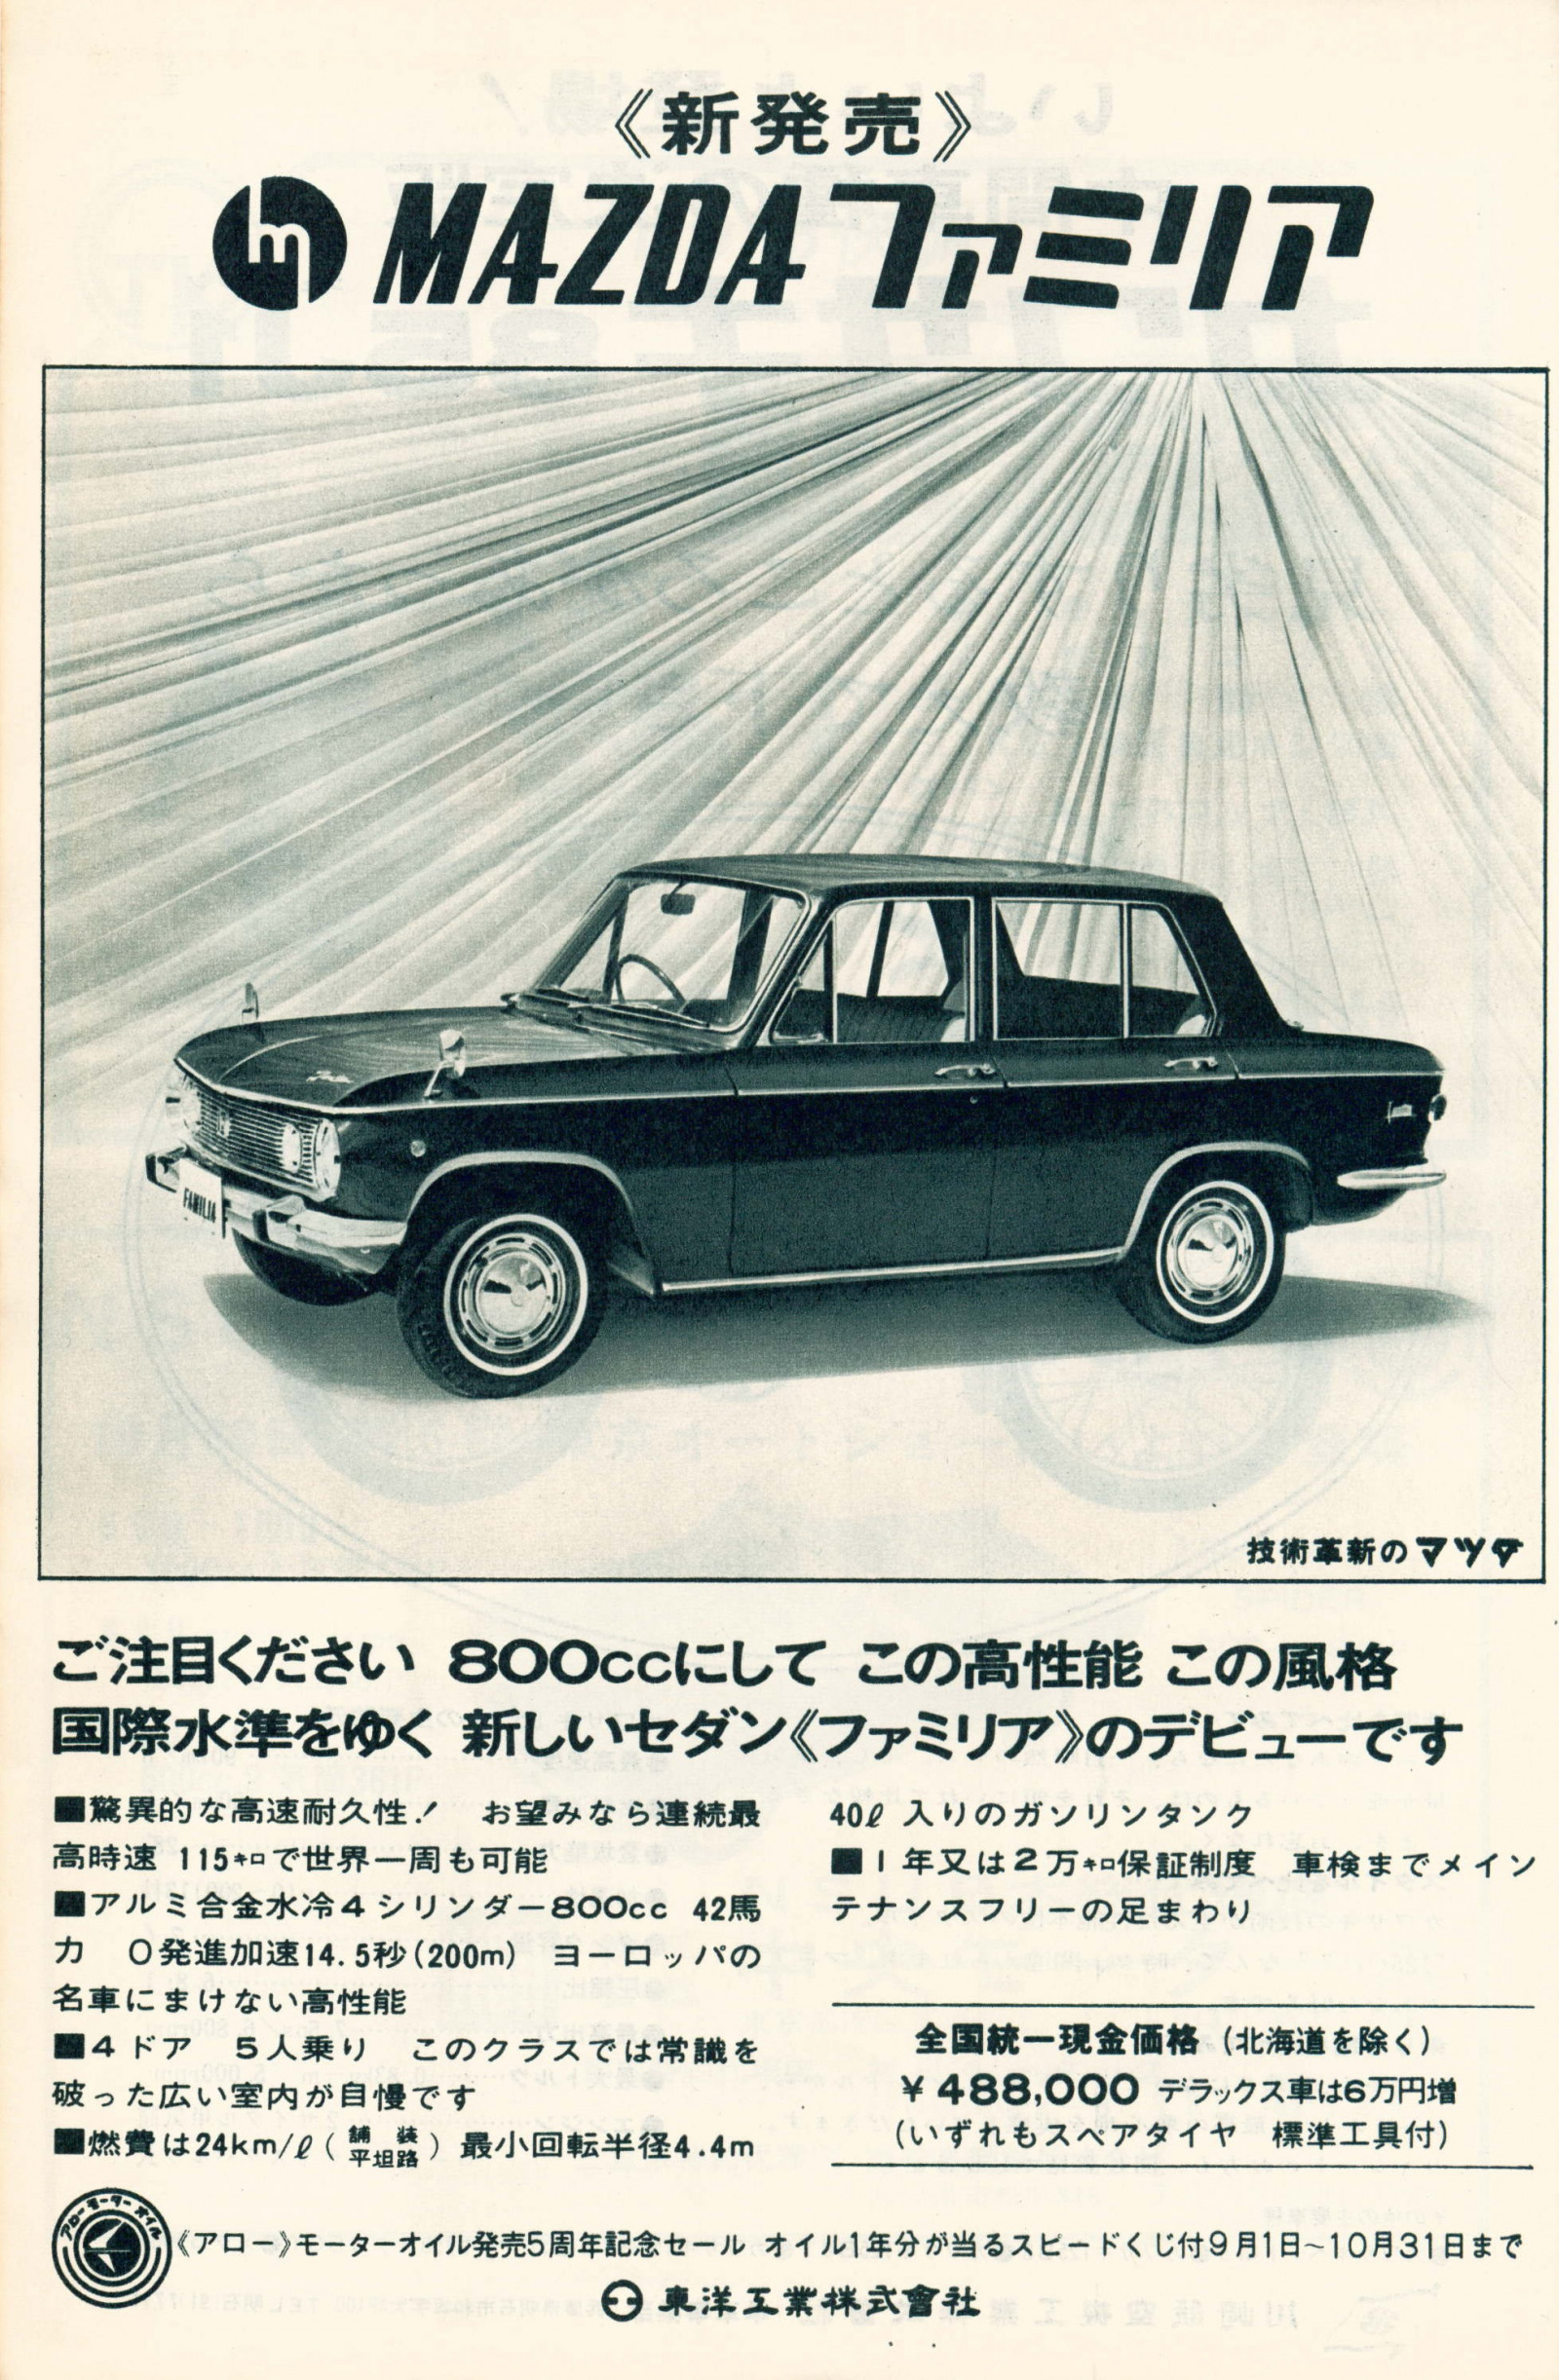 マツダ ファミリア1000 1967 昭和42 年1月 画像 ファミリア で小型乗用車市場に本格参入 マツダ100年史 第10回 第3章 その3 Clicccar Com